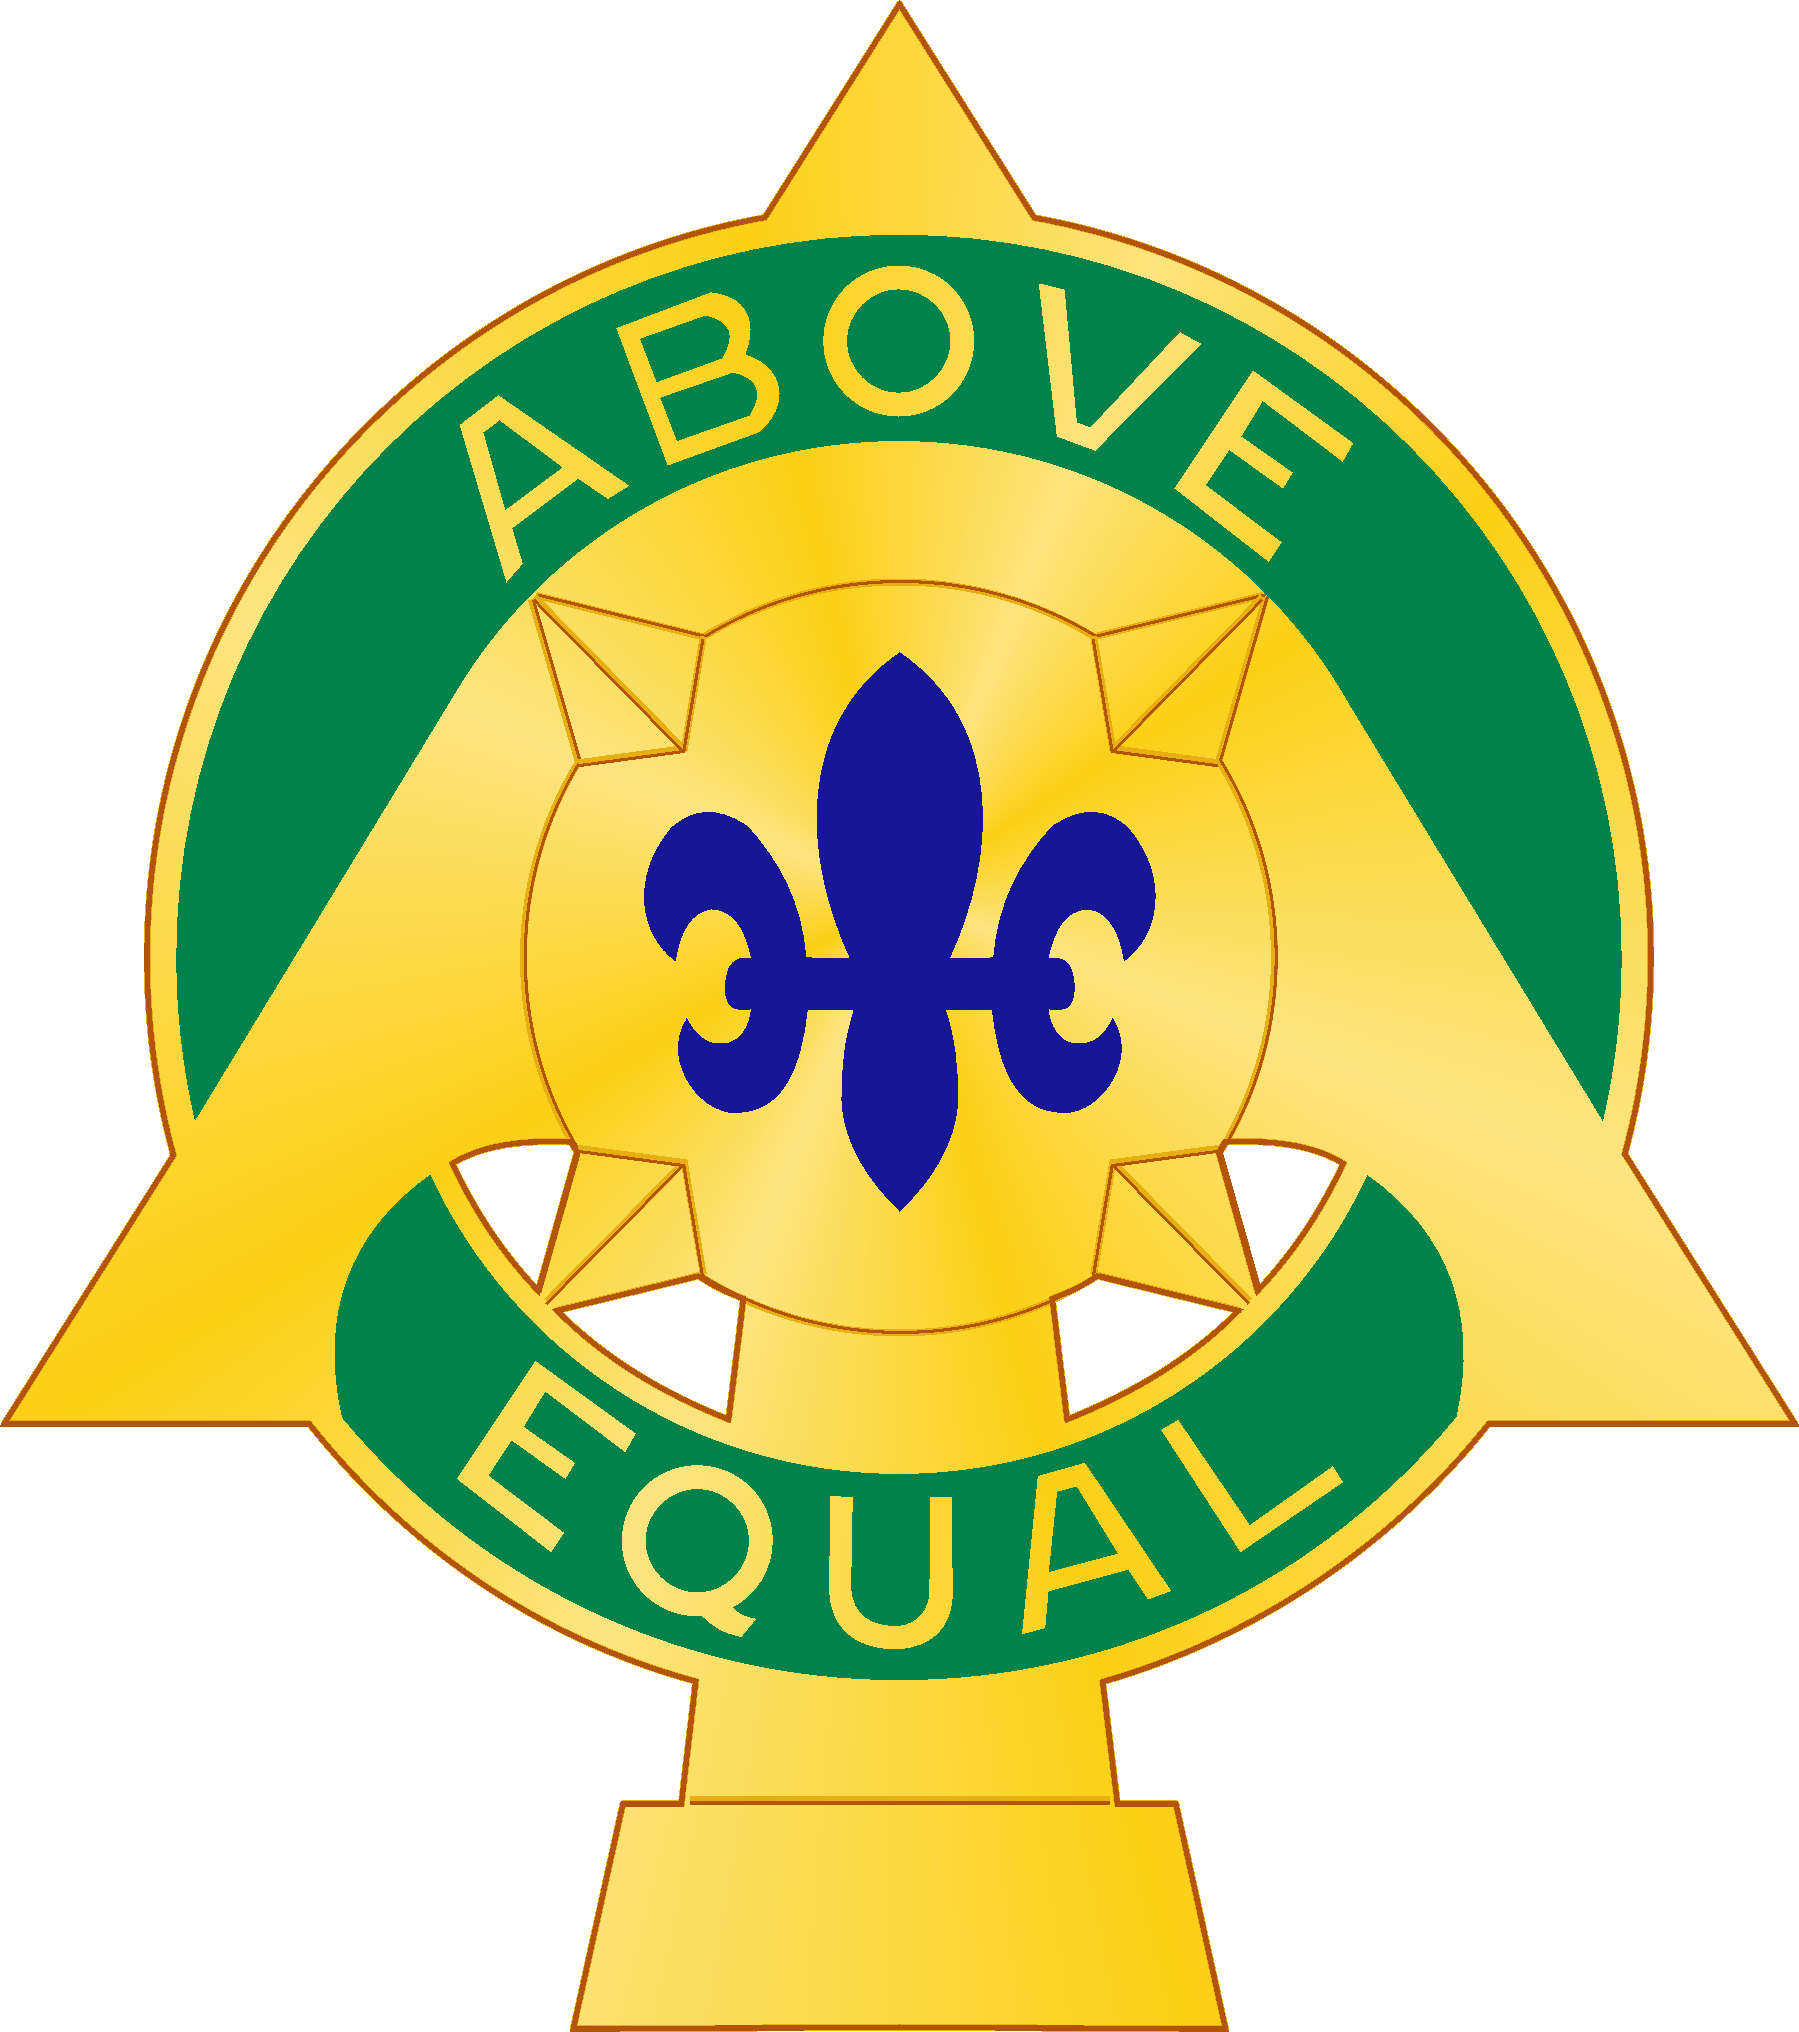 110th Armor Regiment - Emblem (1799x2032)